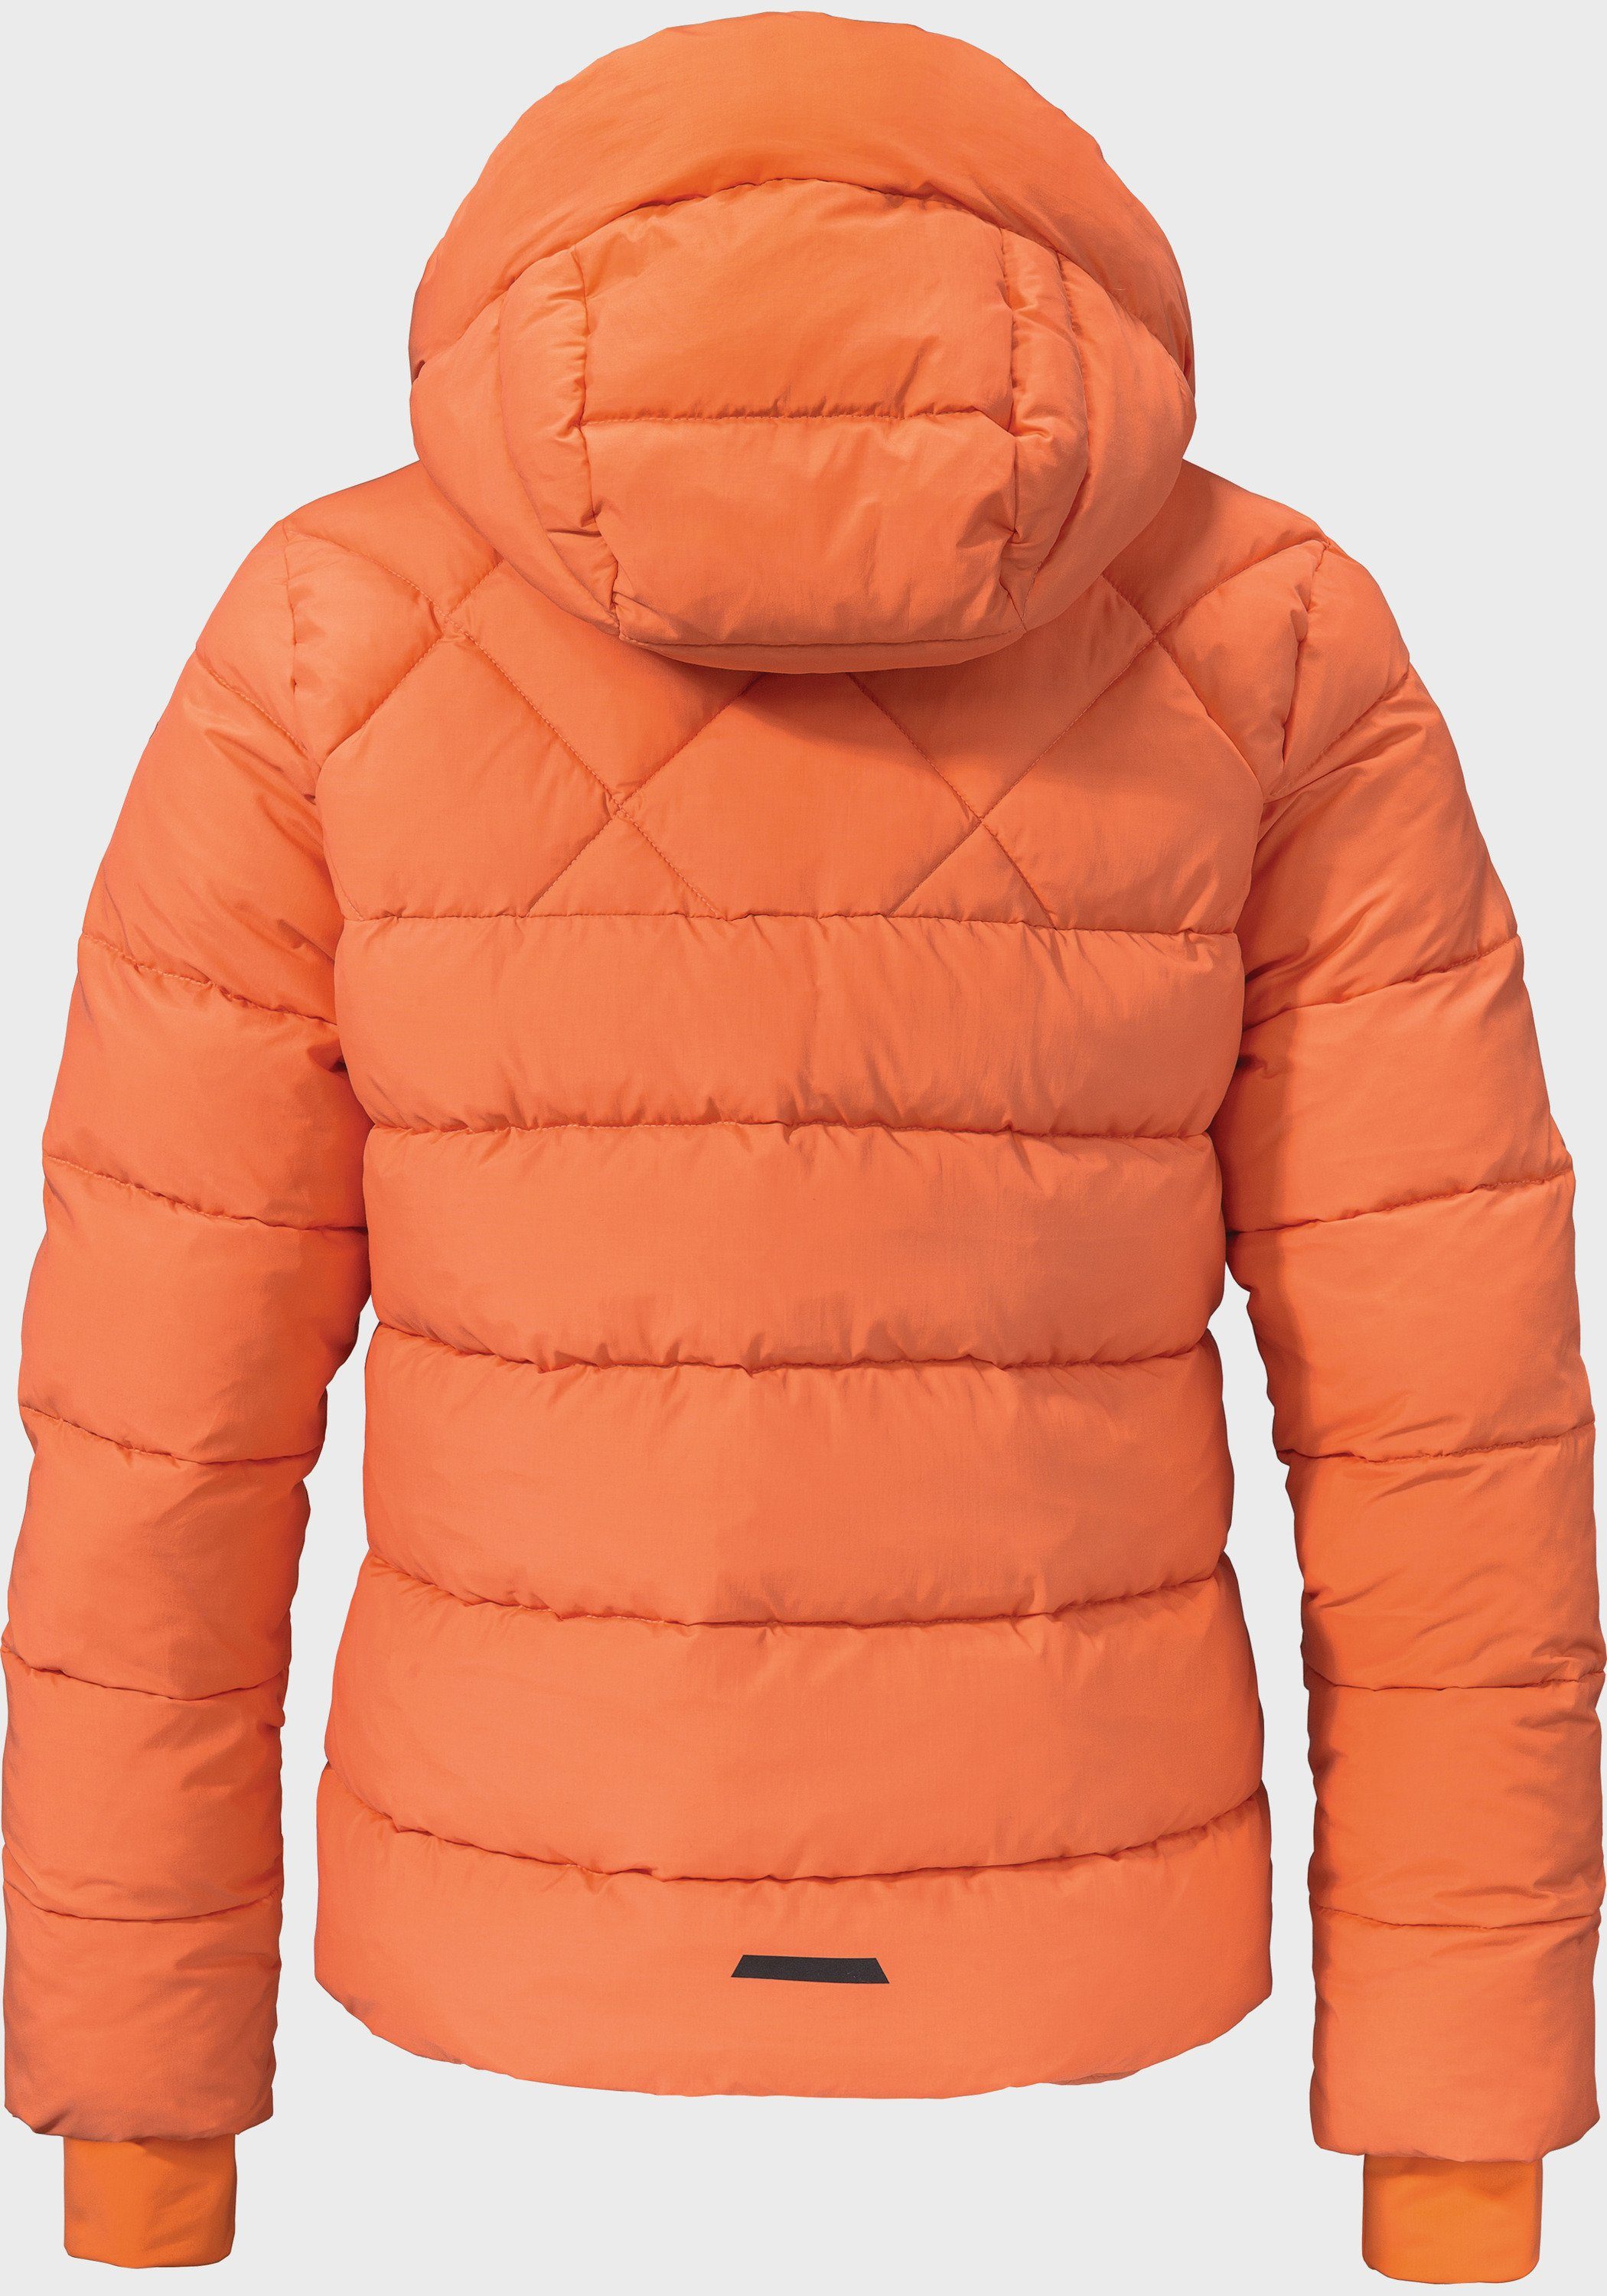 Ins orange Jacket Outdoorjacke Schöffel L Boston